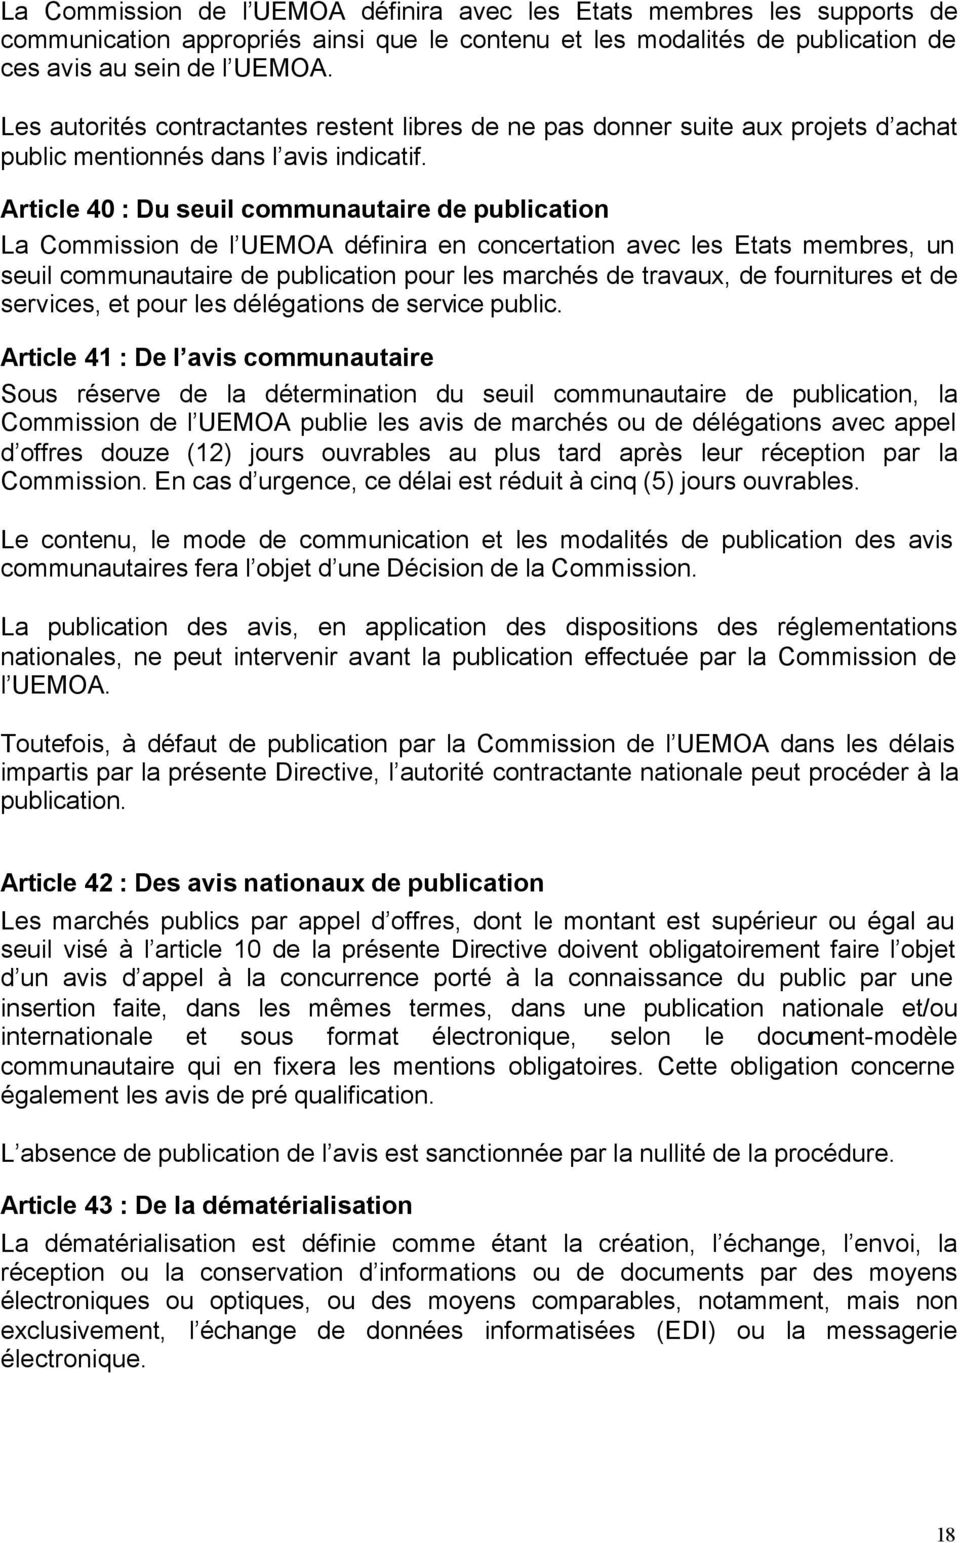 Article 40 : Du seuil communautaire de publication La Commission de l UEMOA définira en concertation avec les Etats membres, un seuil communautaire de publication pour les marchés de travaux, de